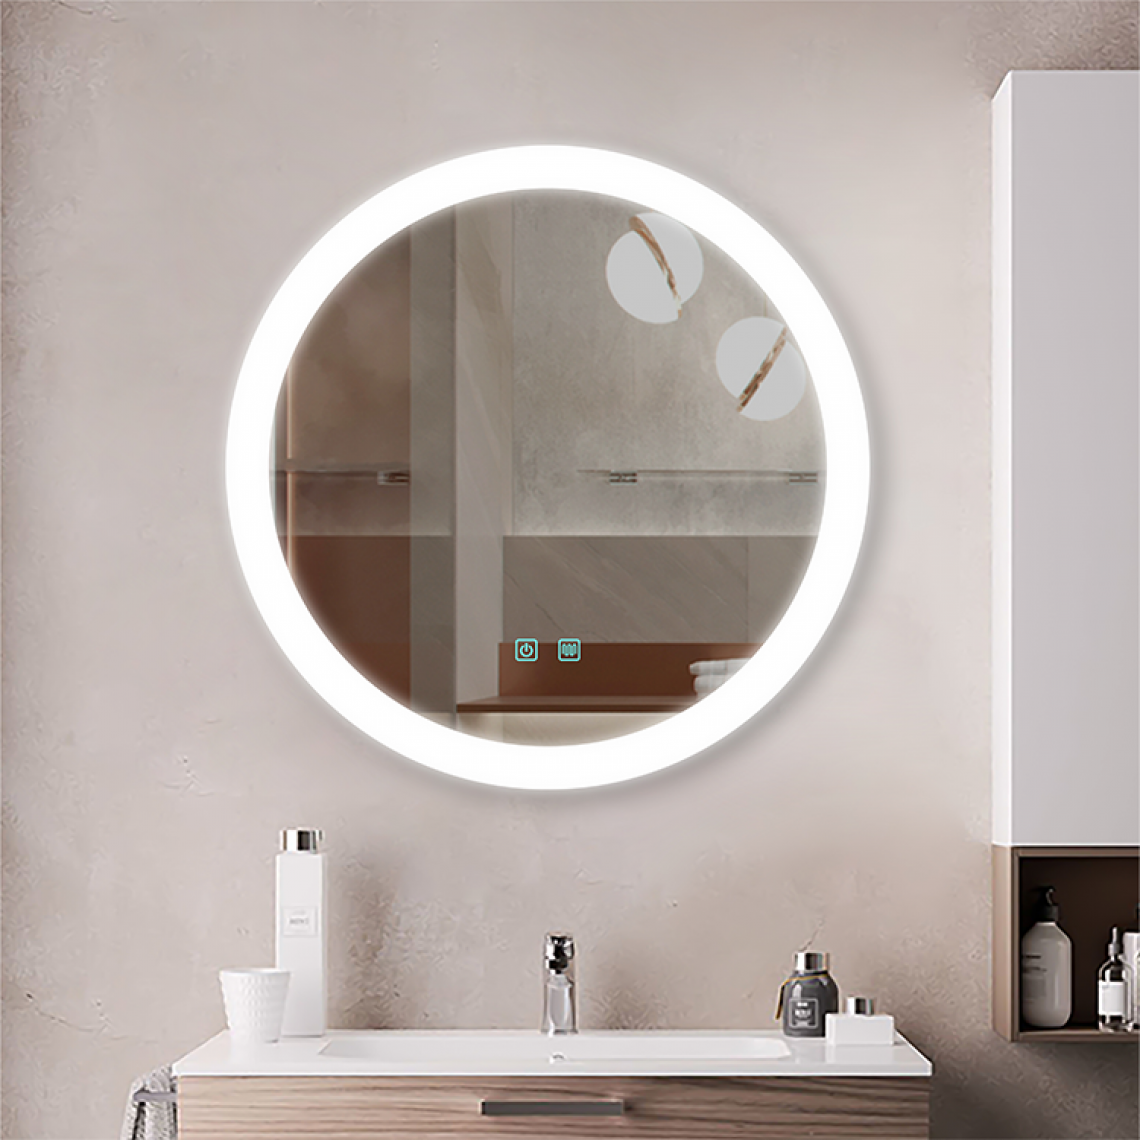 Universal - Salle de bains de style hôtel, miroir mural, écran tactile et miroir anti-brouillard(blanche) - Miroir de salle de bain